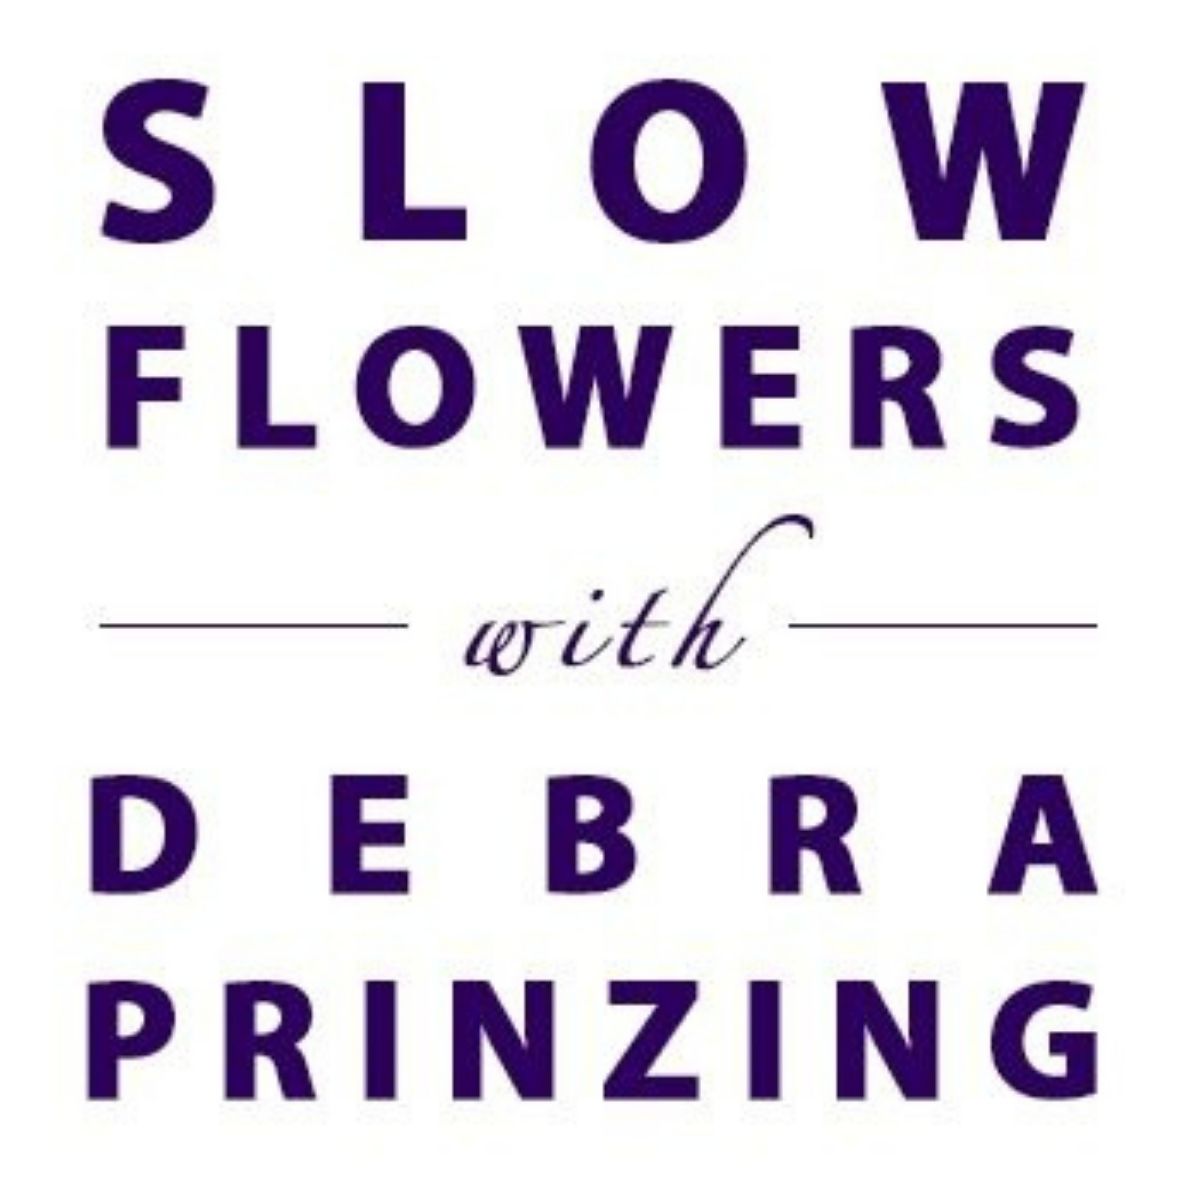 Slow flowers podcast logo - on thursd